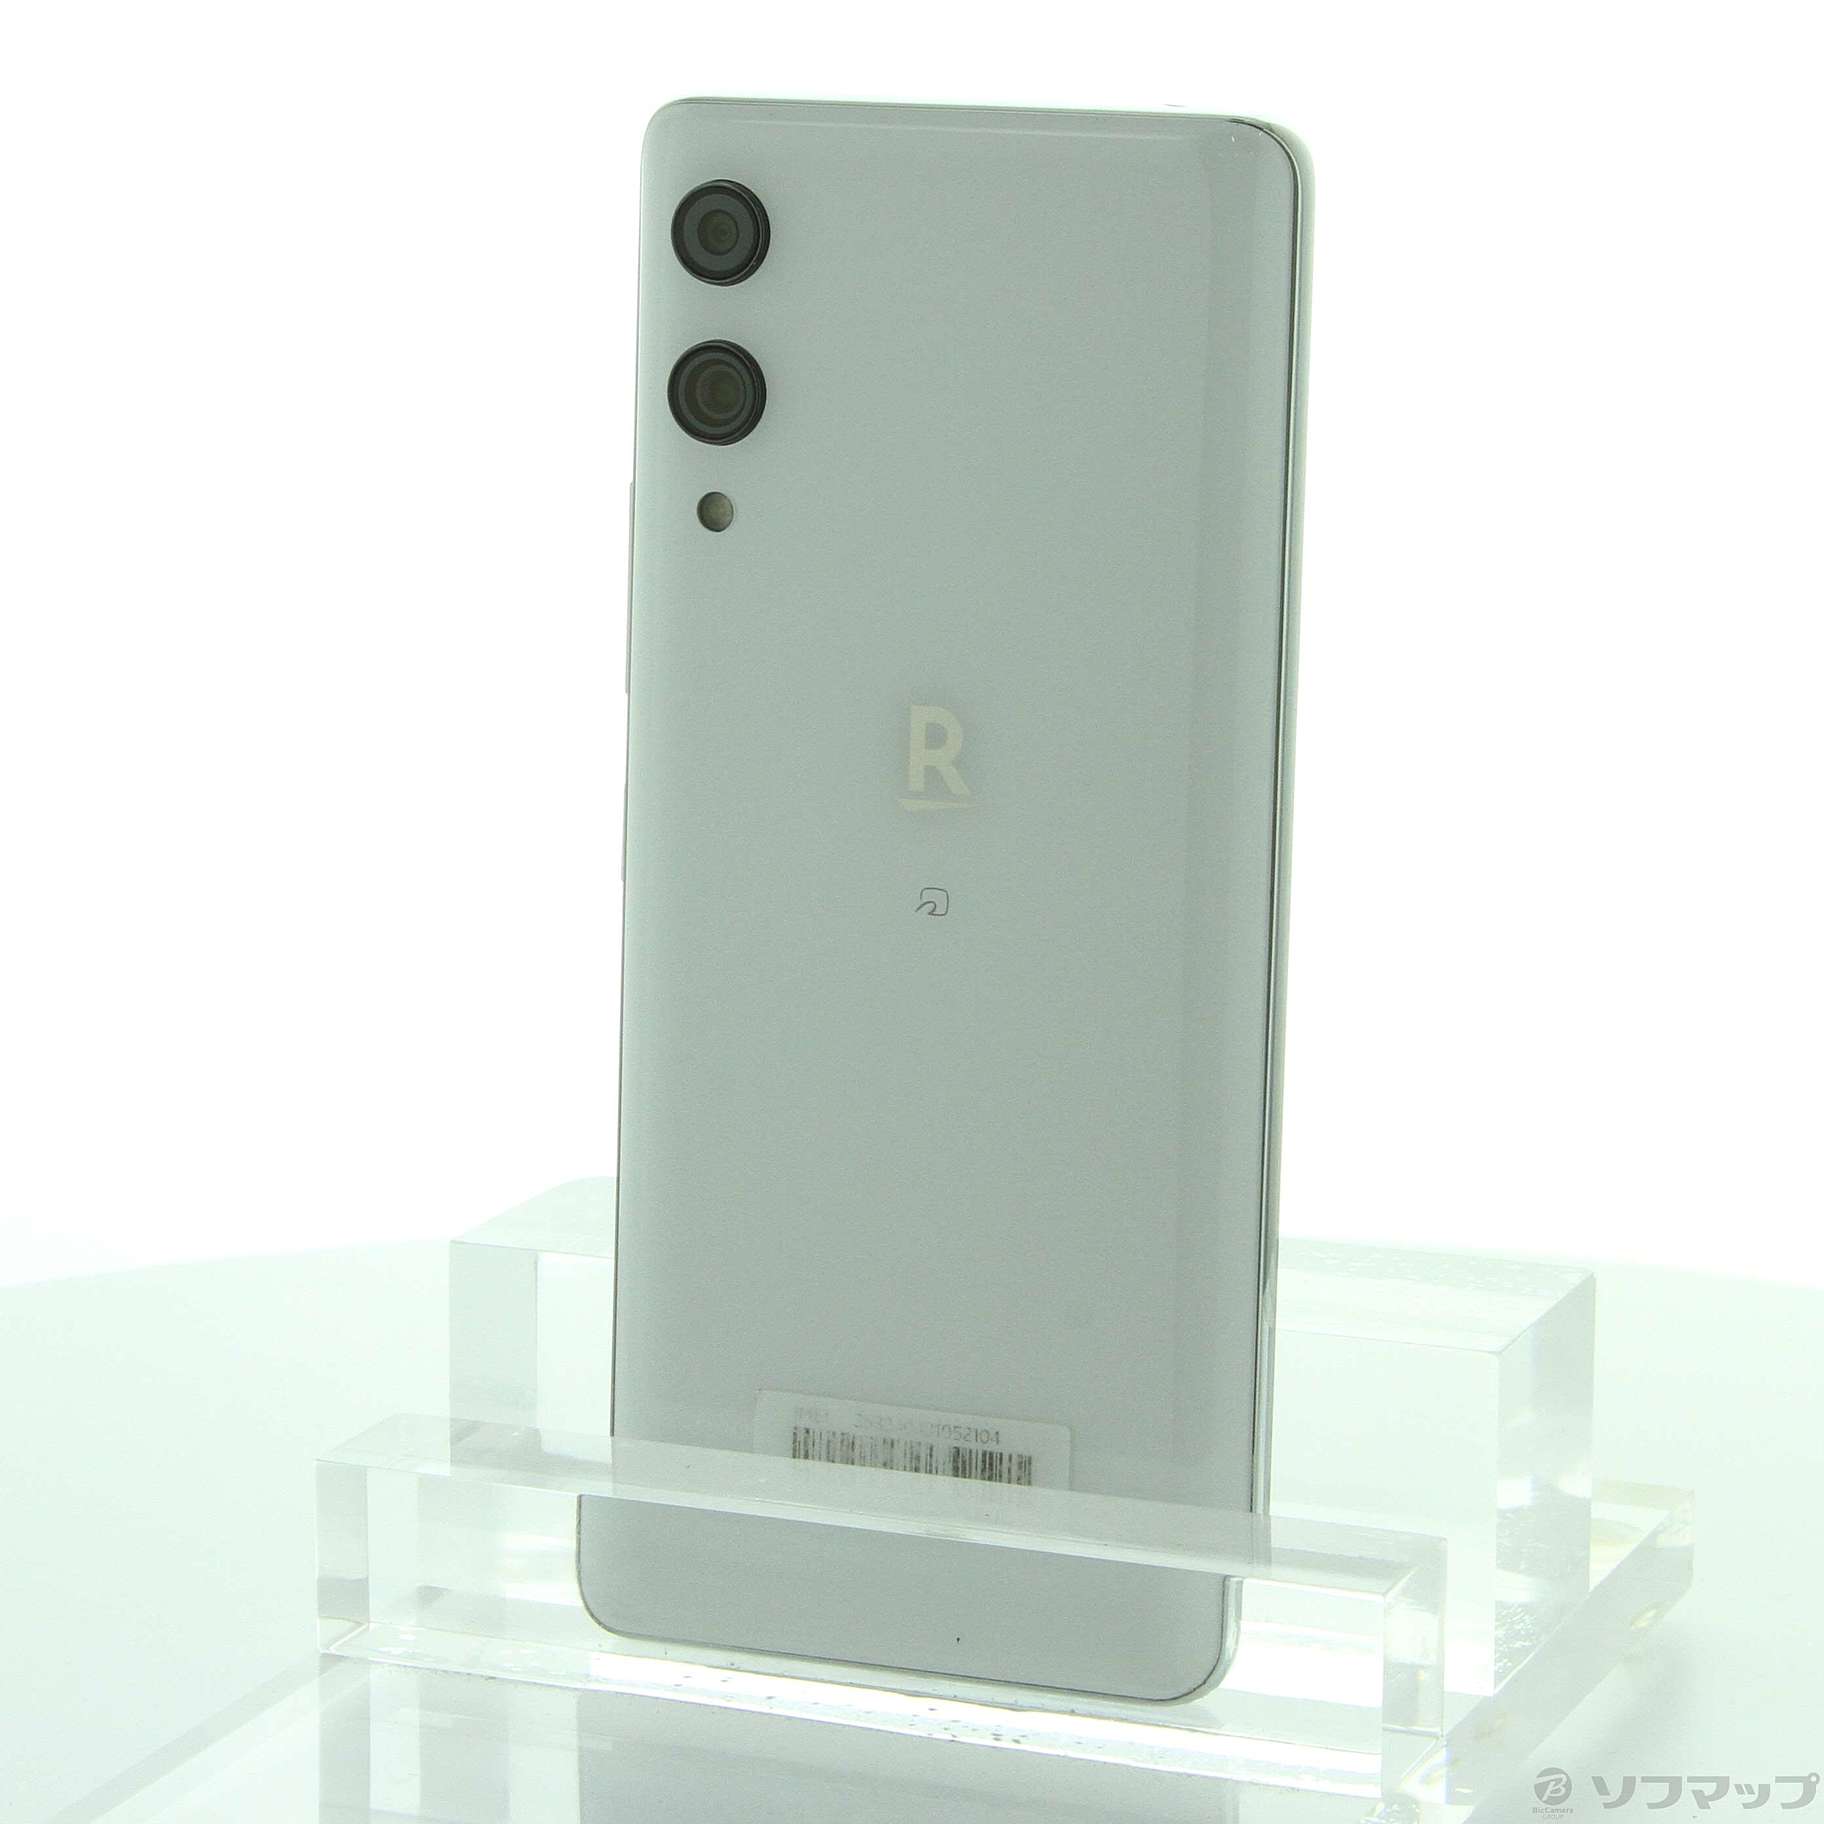 Rakuten Hand 5G ホワイト カラー:ホワイト - スマートフォン本体